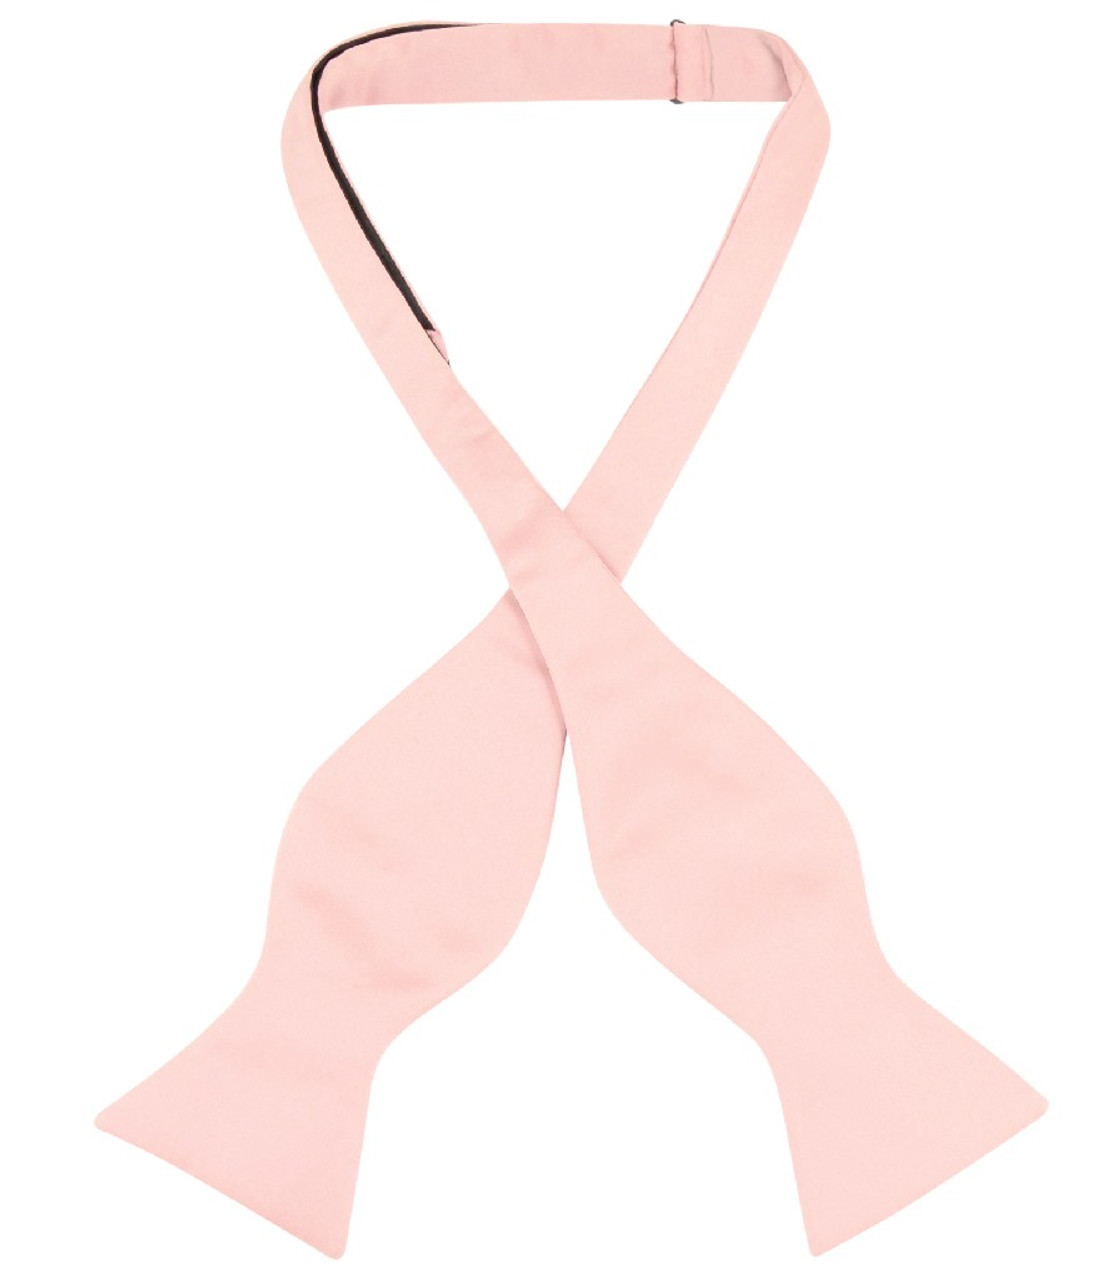 Vesuvio Napoli Self Tie Bow Tie Solid Pink Color Mens BowTie